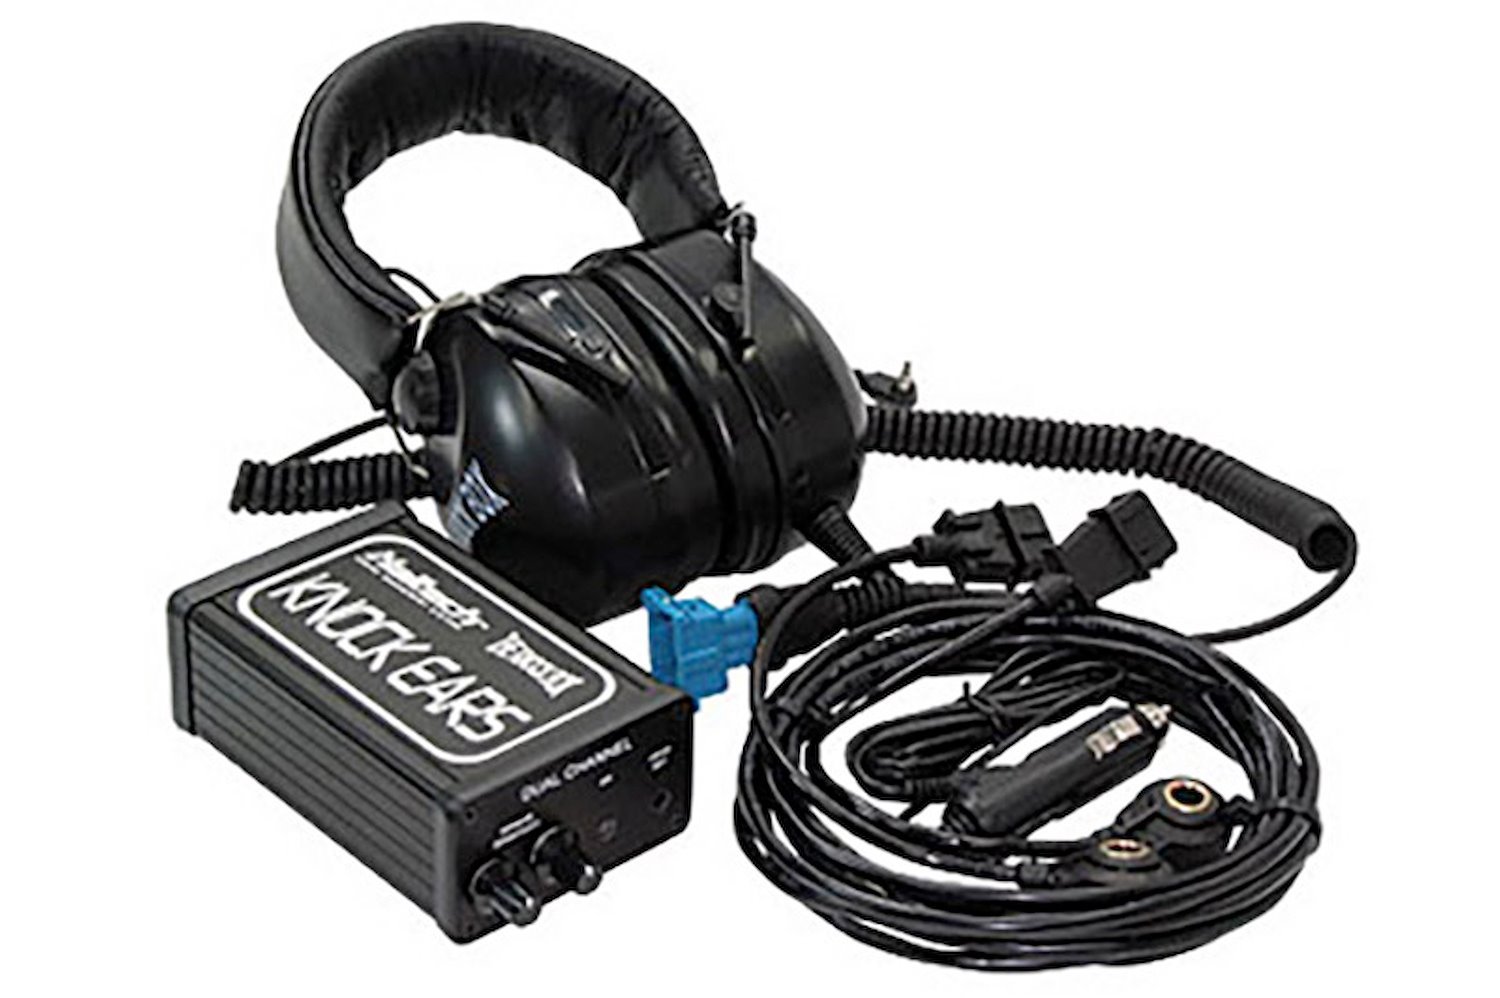 HT-070104 Pro Tuner 'Knock Ears' Kit, Dual Channel, 2014 Spec